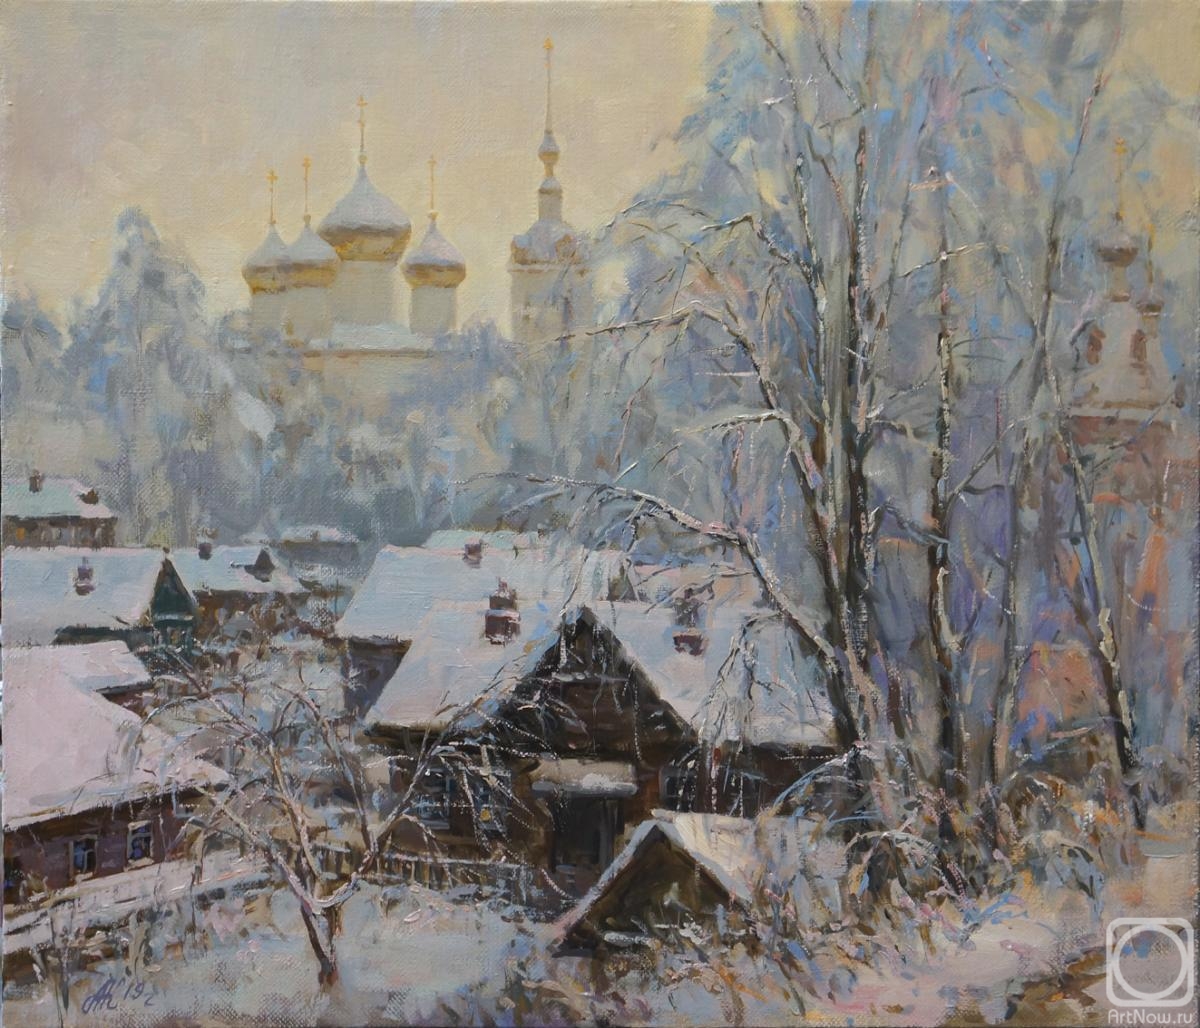 Katyshev Anton. Winter evening. Dmitrov